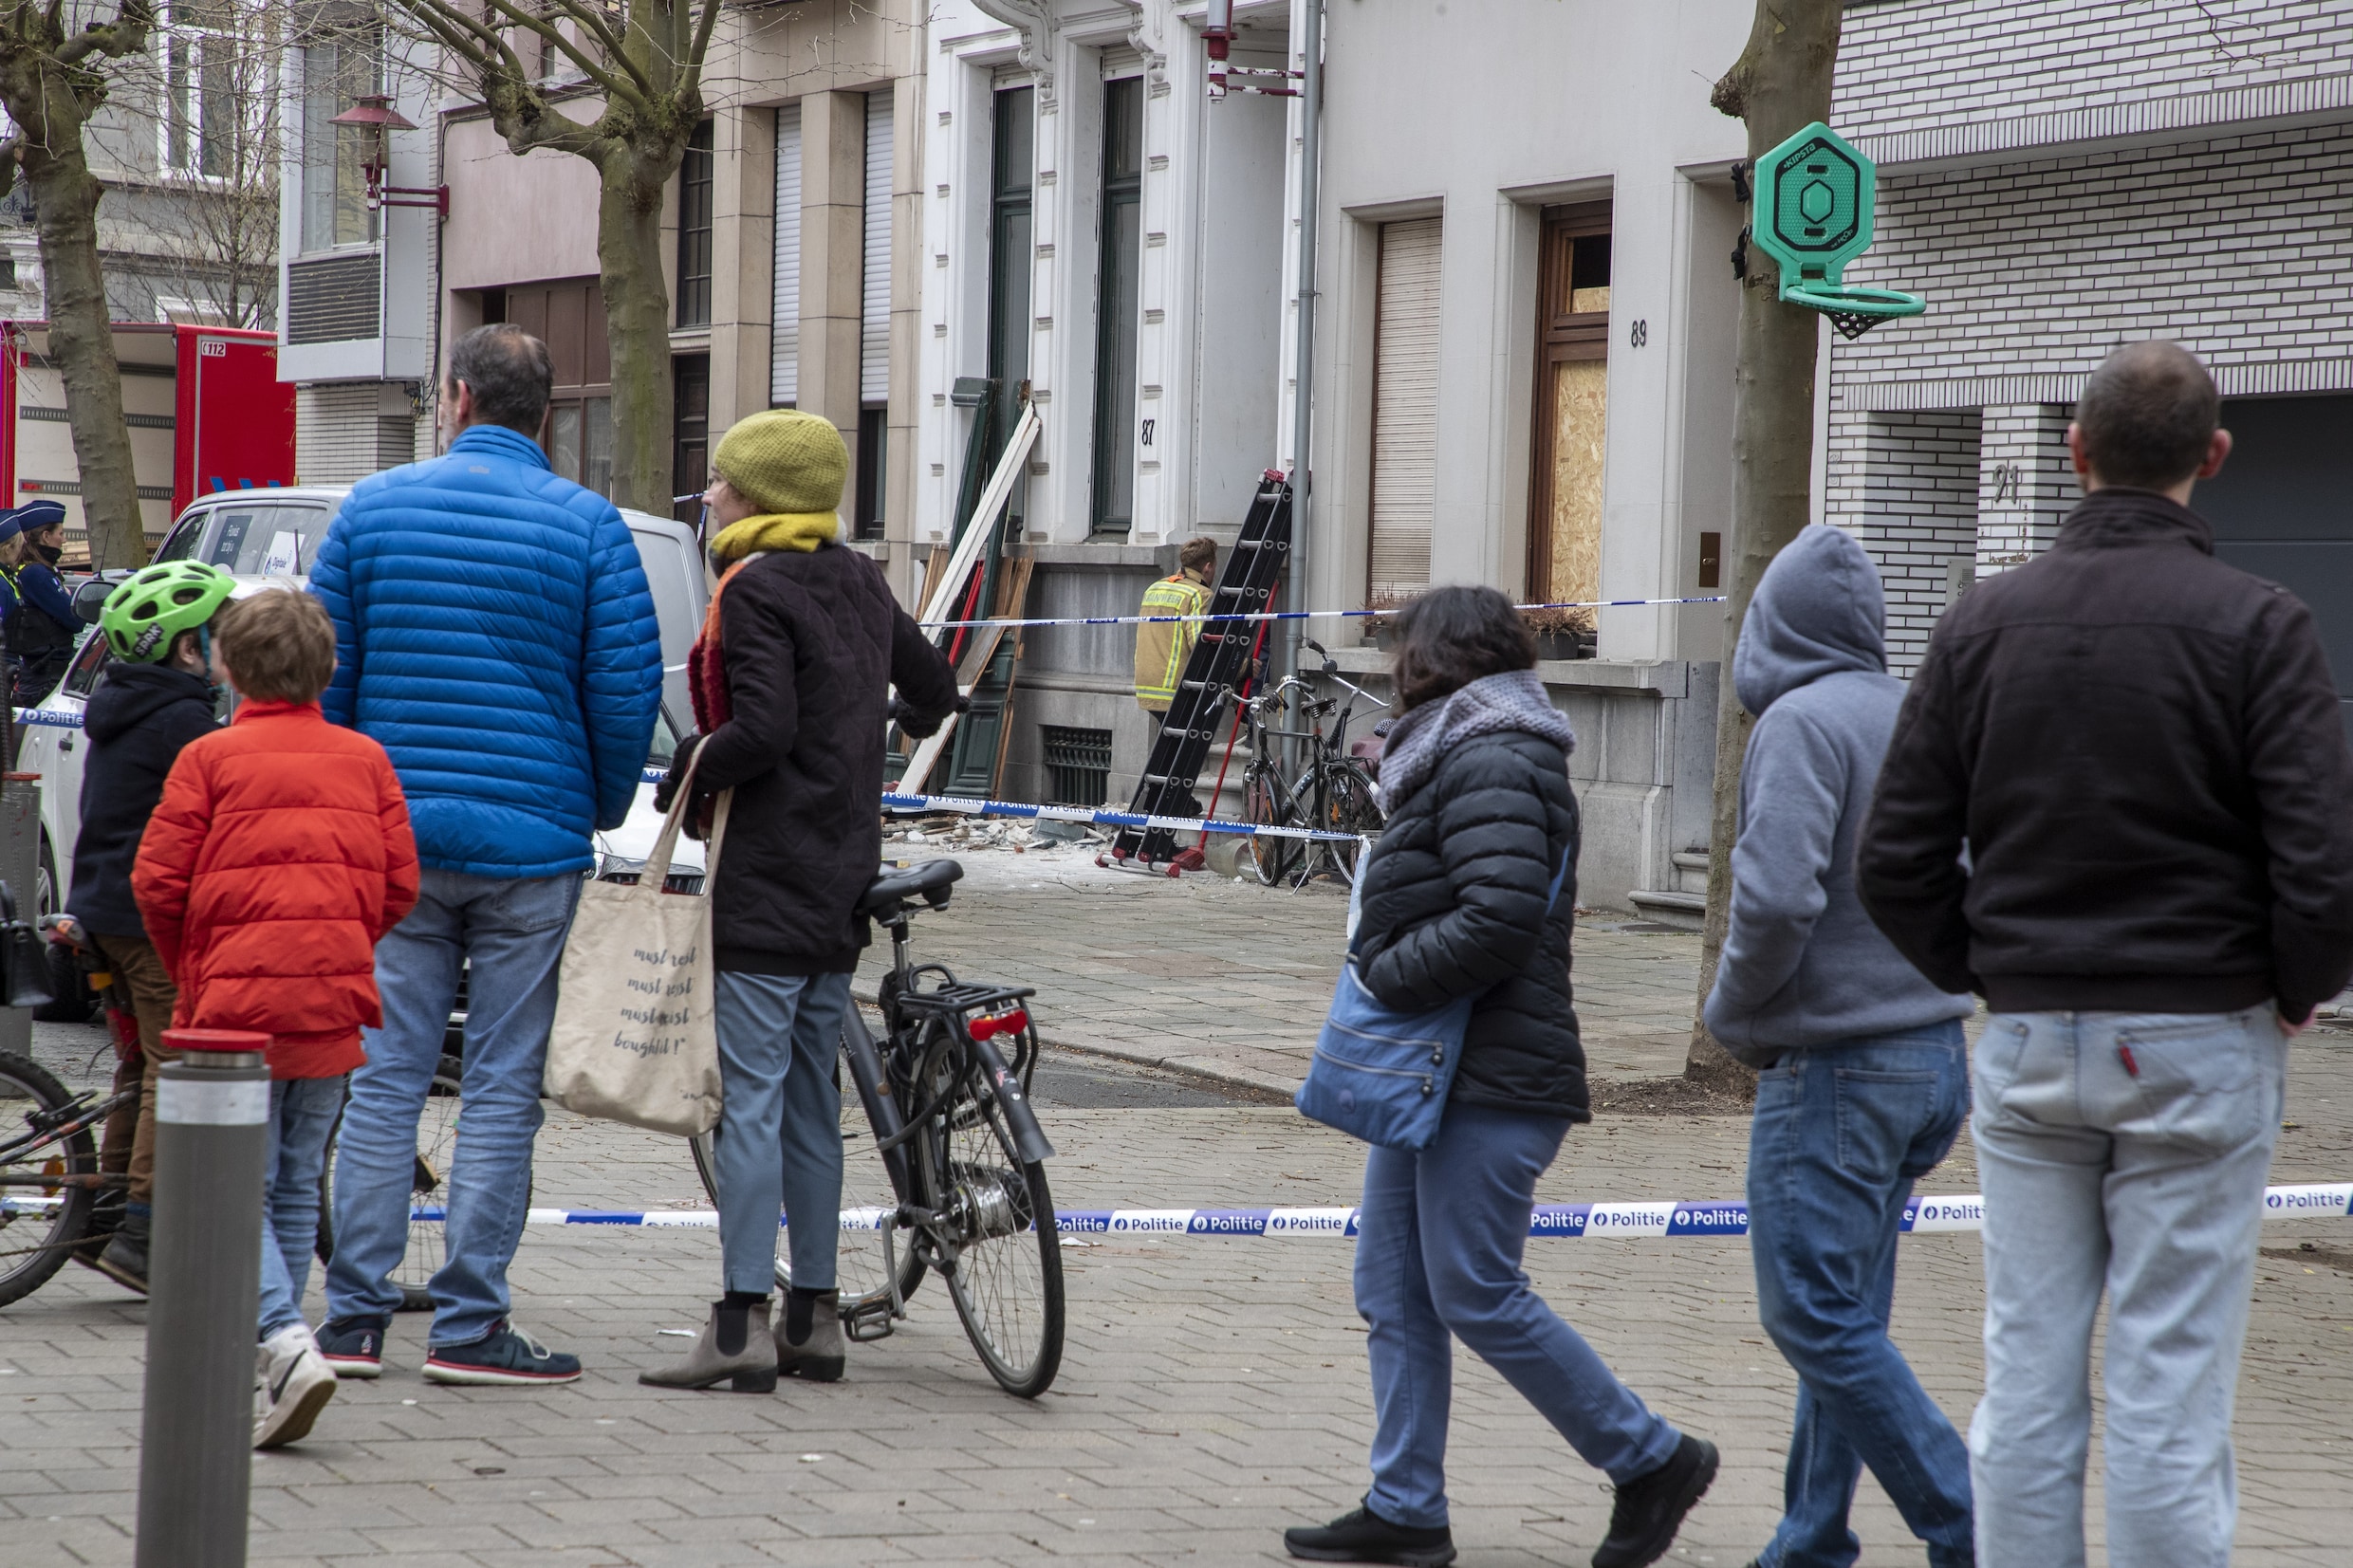 Na explosie in centrum Antwerpen: geviseerde woning is ouderlijk huis van verdachte in Sky-dossier